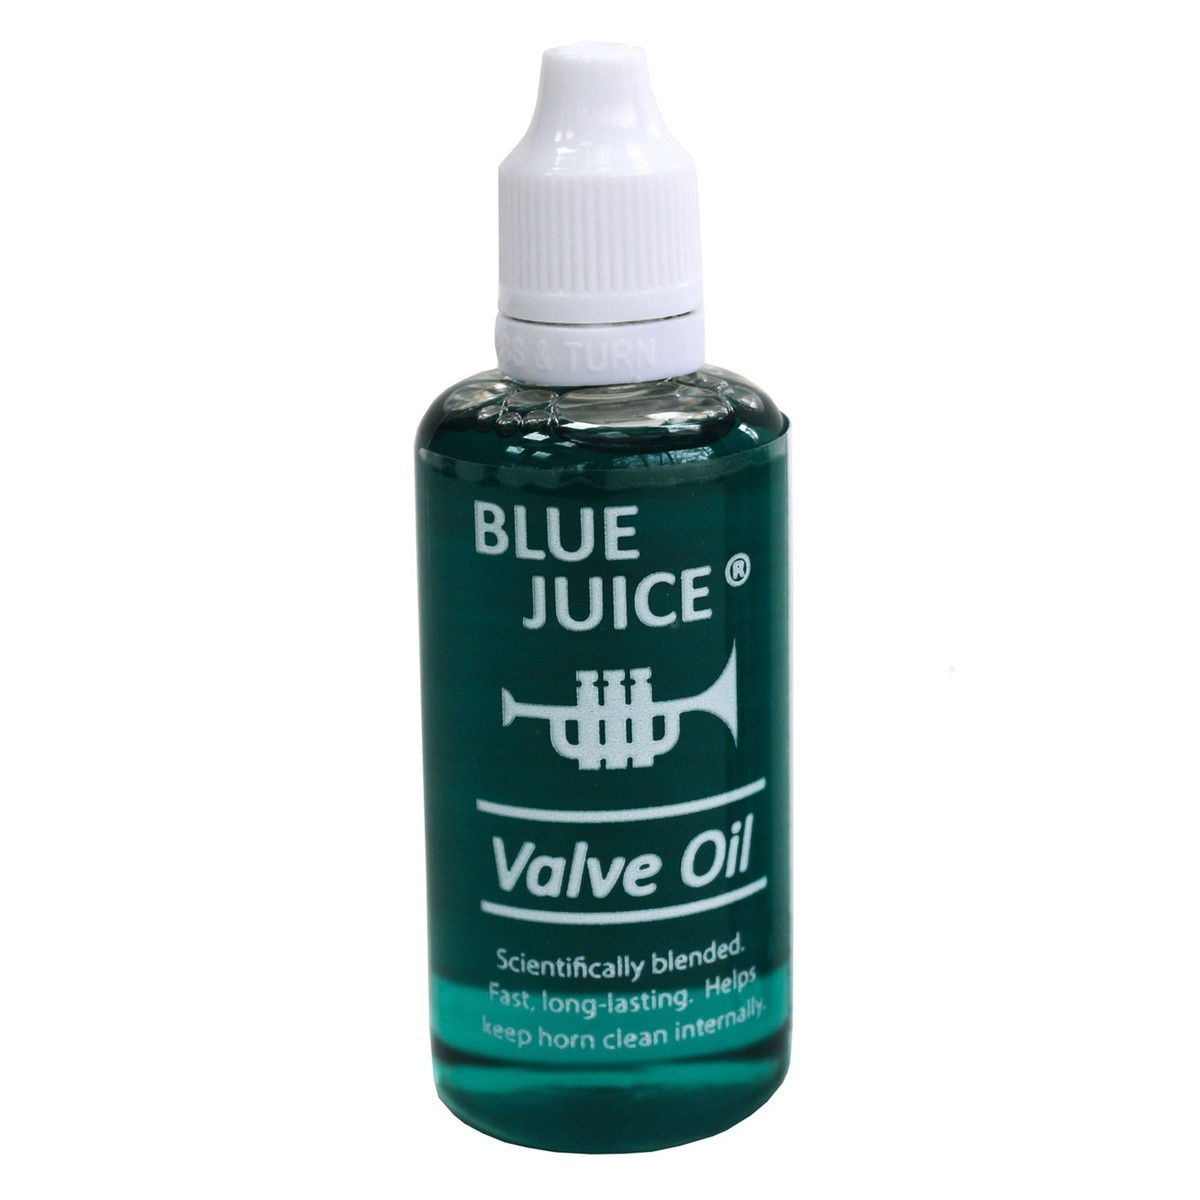 BLUE JUiCE Valve Oil